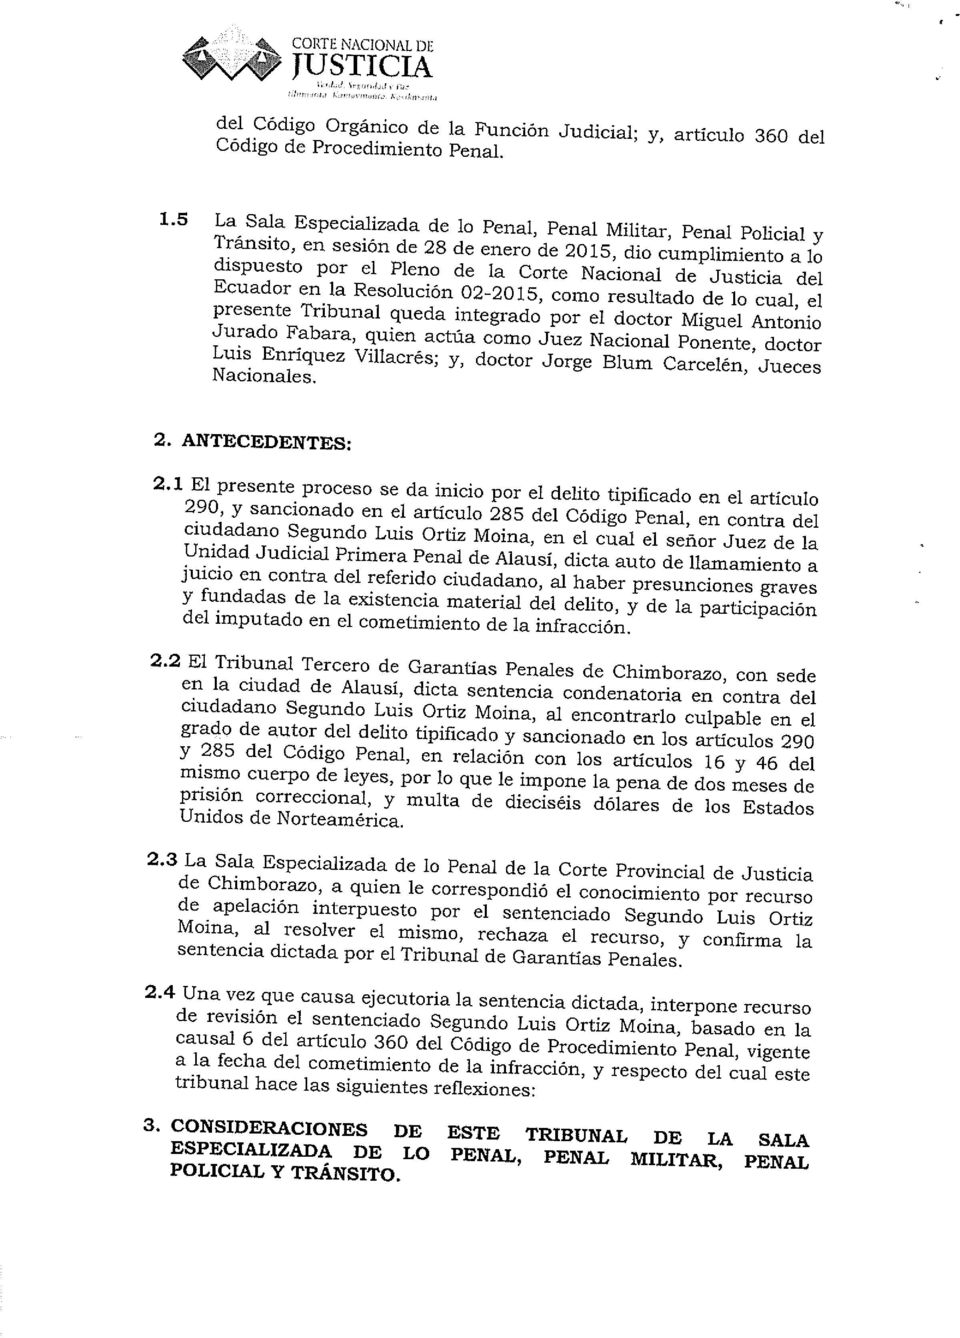 Ecuador en la Resolución 02-2015, como resultado de lo cual, el presente Tribunal queda integrado por el doctor Miguel Antonio Jurado Fabara, quien actúa como Juez Nacional Ponente, doctor Luis